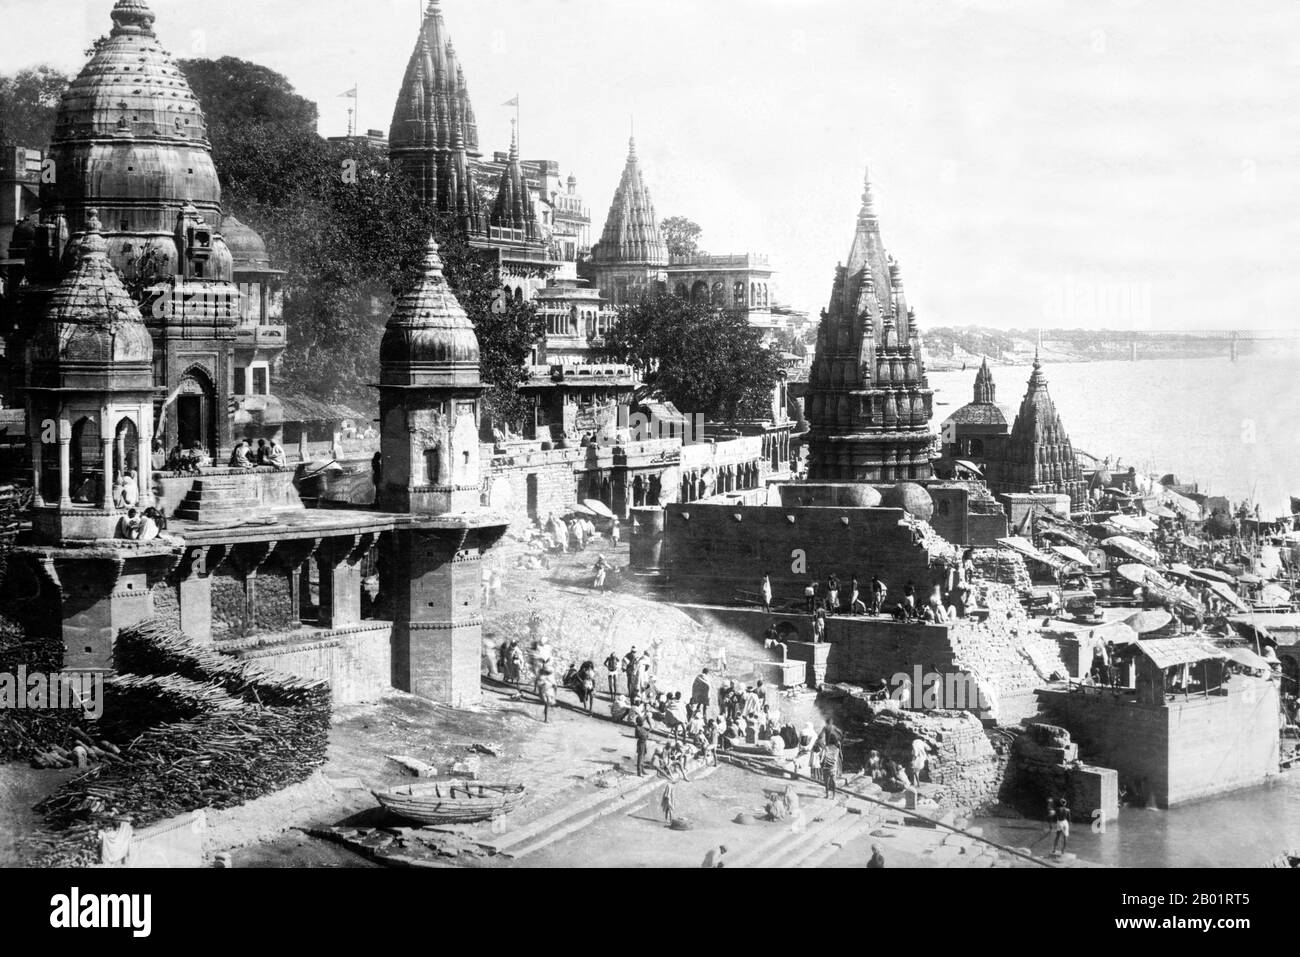 Indien: Die Haupteinäscherung Ghetz, Varanasi (Benares), um 1920. Varanasi, auch bekannt als Banaras oder Benaras, ist eine Stadt am Ufer des Ganges im indischen Bundesstaat Uttar Pradesh, 320 Kilometer (199 mi) südöstlich der Hauptstadt Lucknow. Die Stadt wird von Hindus, Buddhisten und Jains als heilige Stadt angesehen. Es ist eine der ältesten durchgehend bewohnten Städte der Welt und die älteste in Indien. Der Kaschi Naresh (Maharaja von Kaschi) ist der wichtigste Kulturförderer von Varanasi und ein wesentlicher Bestandteil aller religiösen Feiern. Stockfoto